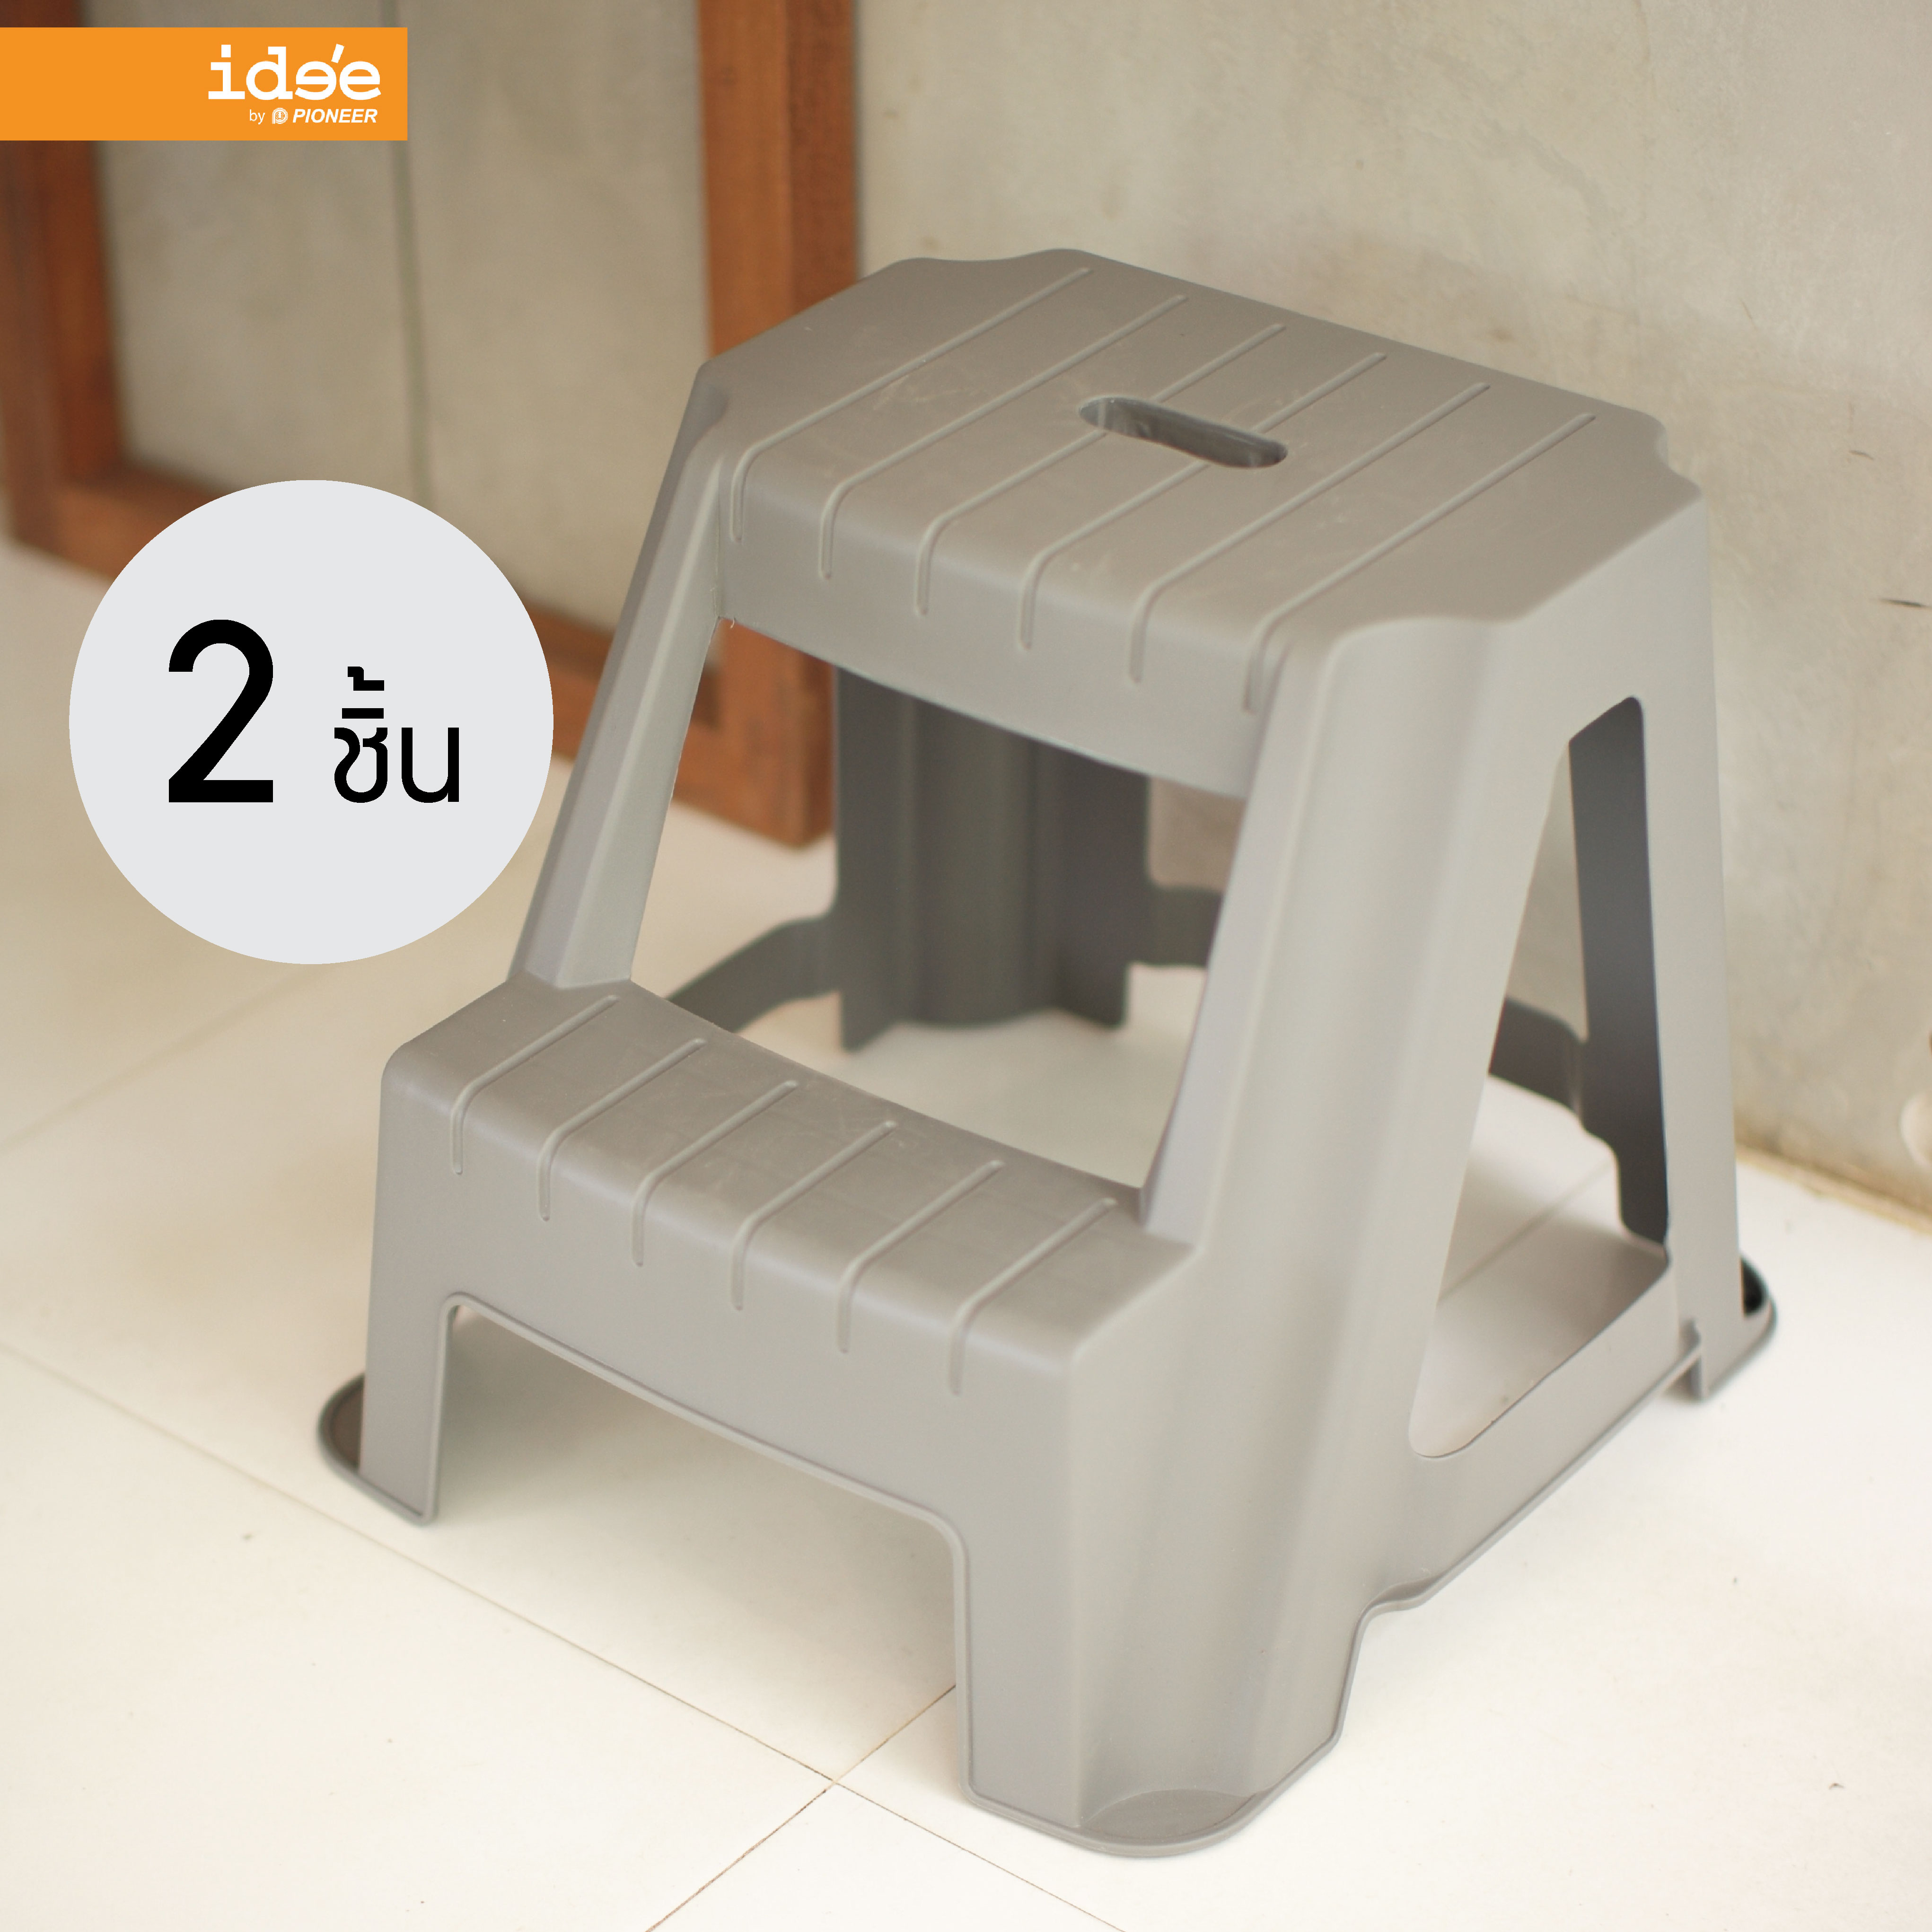 ide'e [2 PCS] PN9140 2 Step Stand เก้าอี้บันได 2 ขั้น มีที่จับง่ายต่อเคลื่อนย้าย ใช้งานสะดวก แข็งแรง ทนทาน